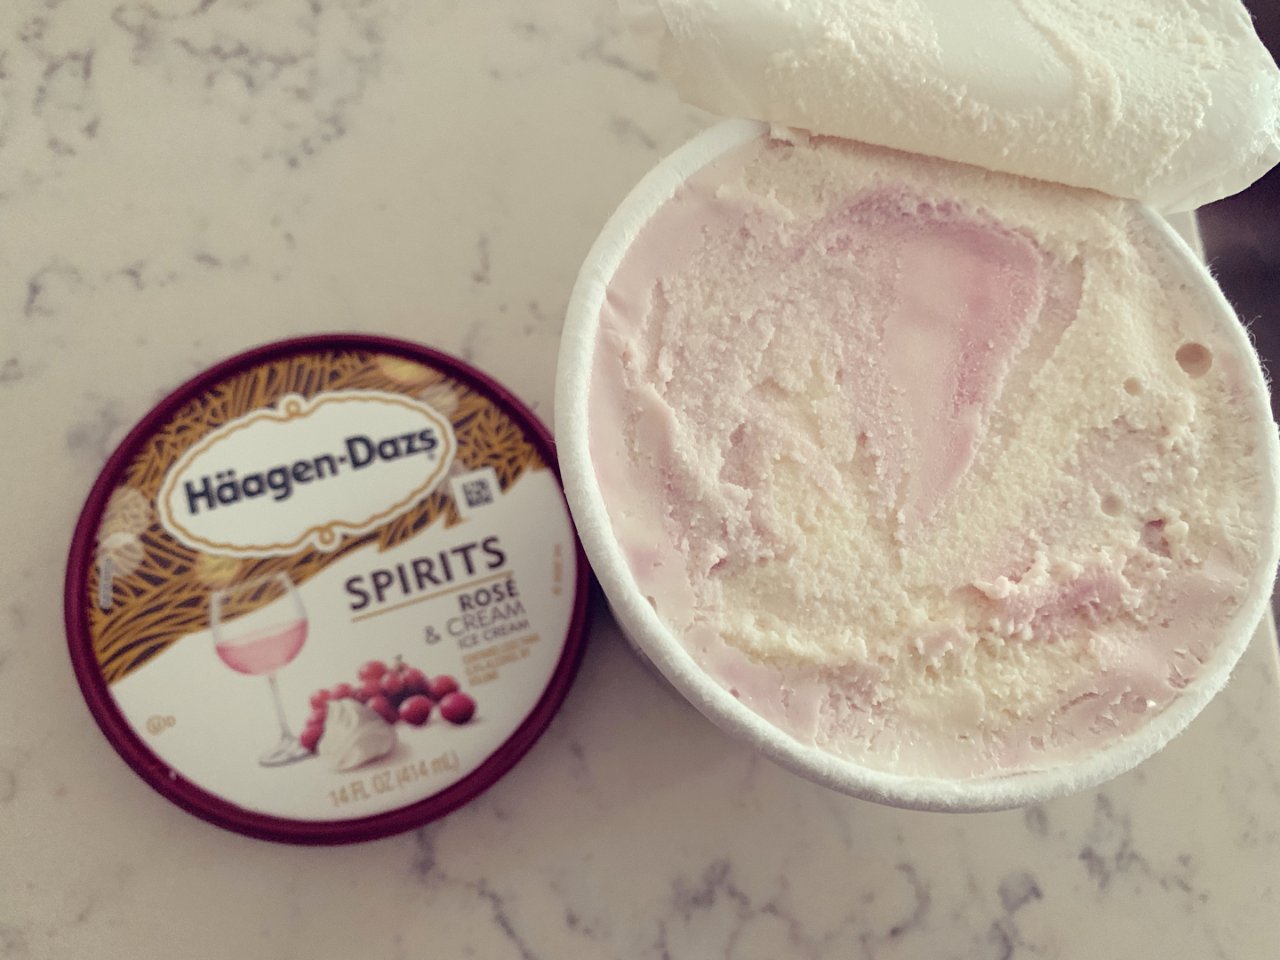 哈根达斯粉红气泡酒冰淇淋...